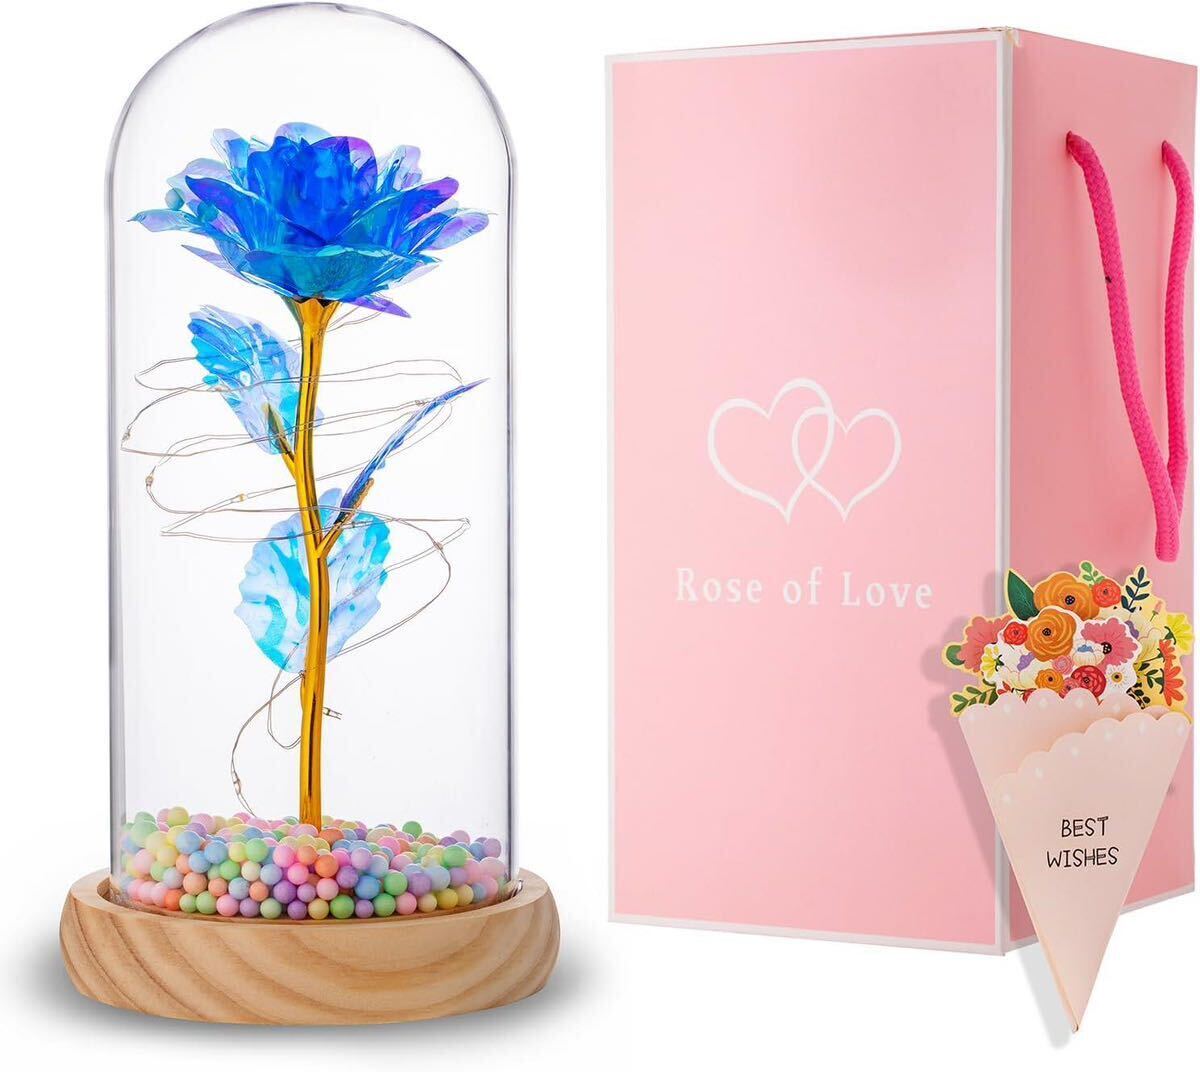  bargain sale! Mother's Day flower light rose shines LED light memory day Valentine White Day birthday Christmas . job celebration gift ( blue )